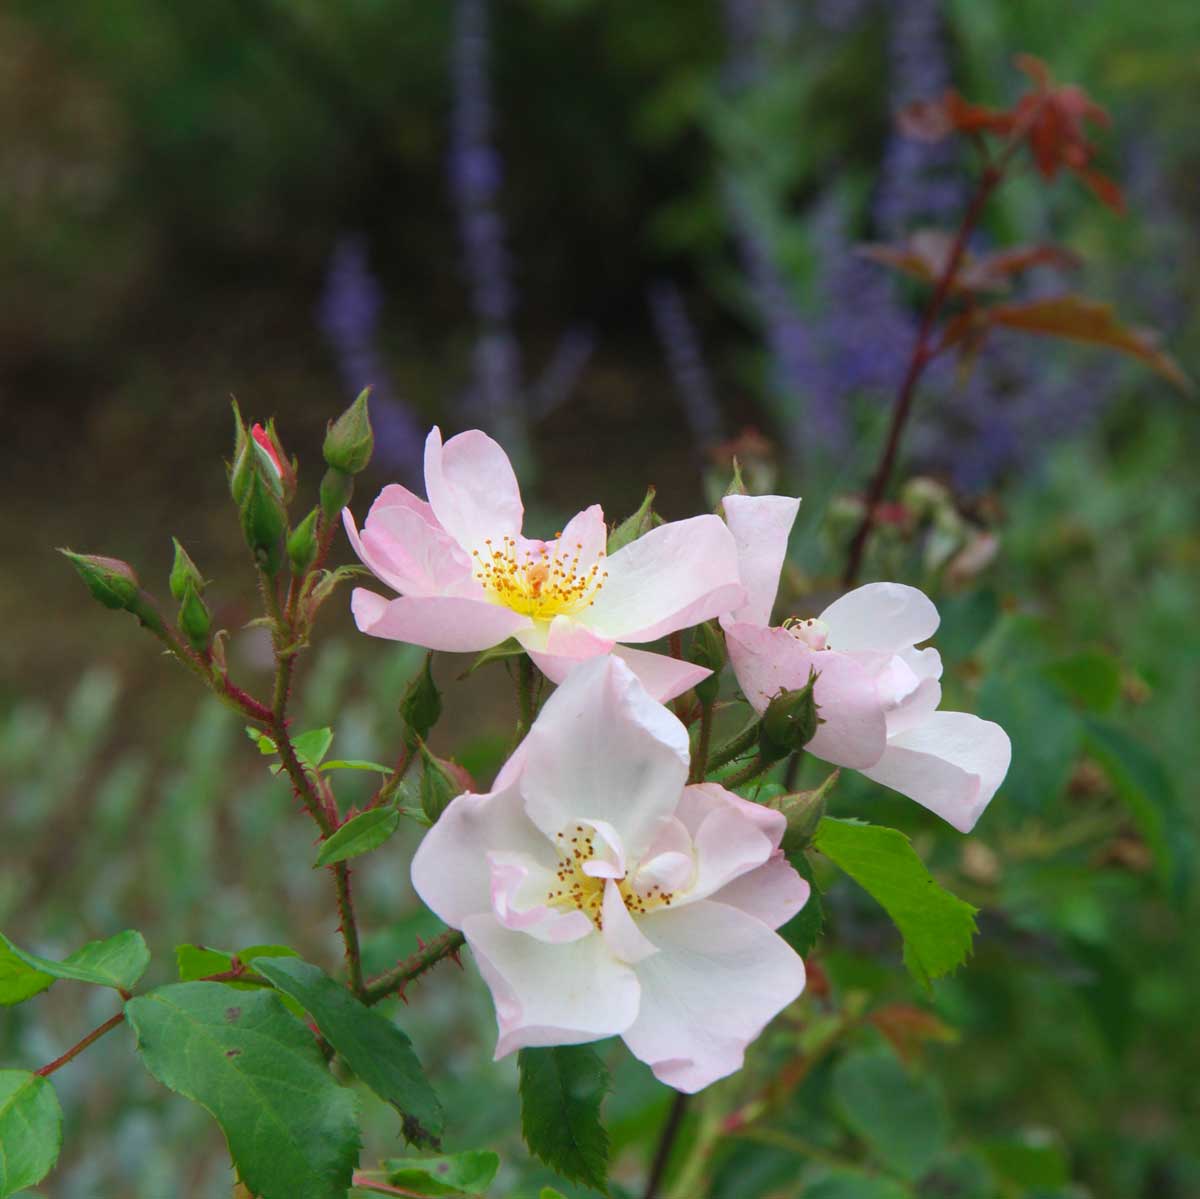 gros plan sur des roses sauvages de couleur rose pâle